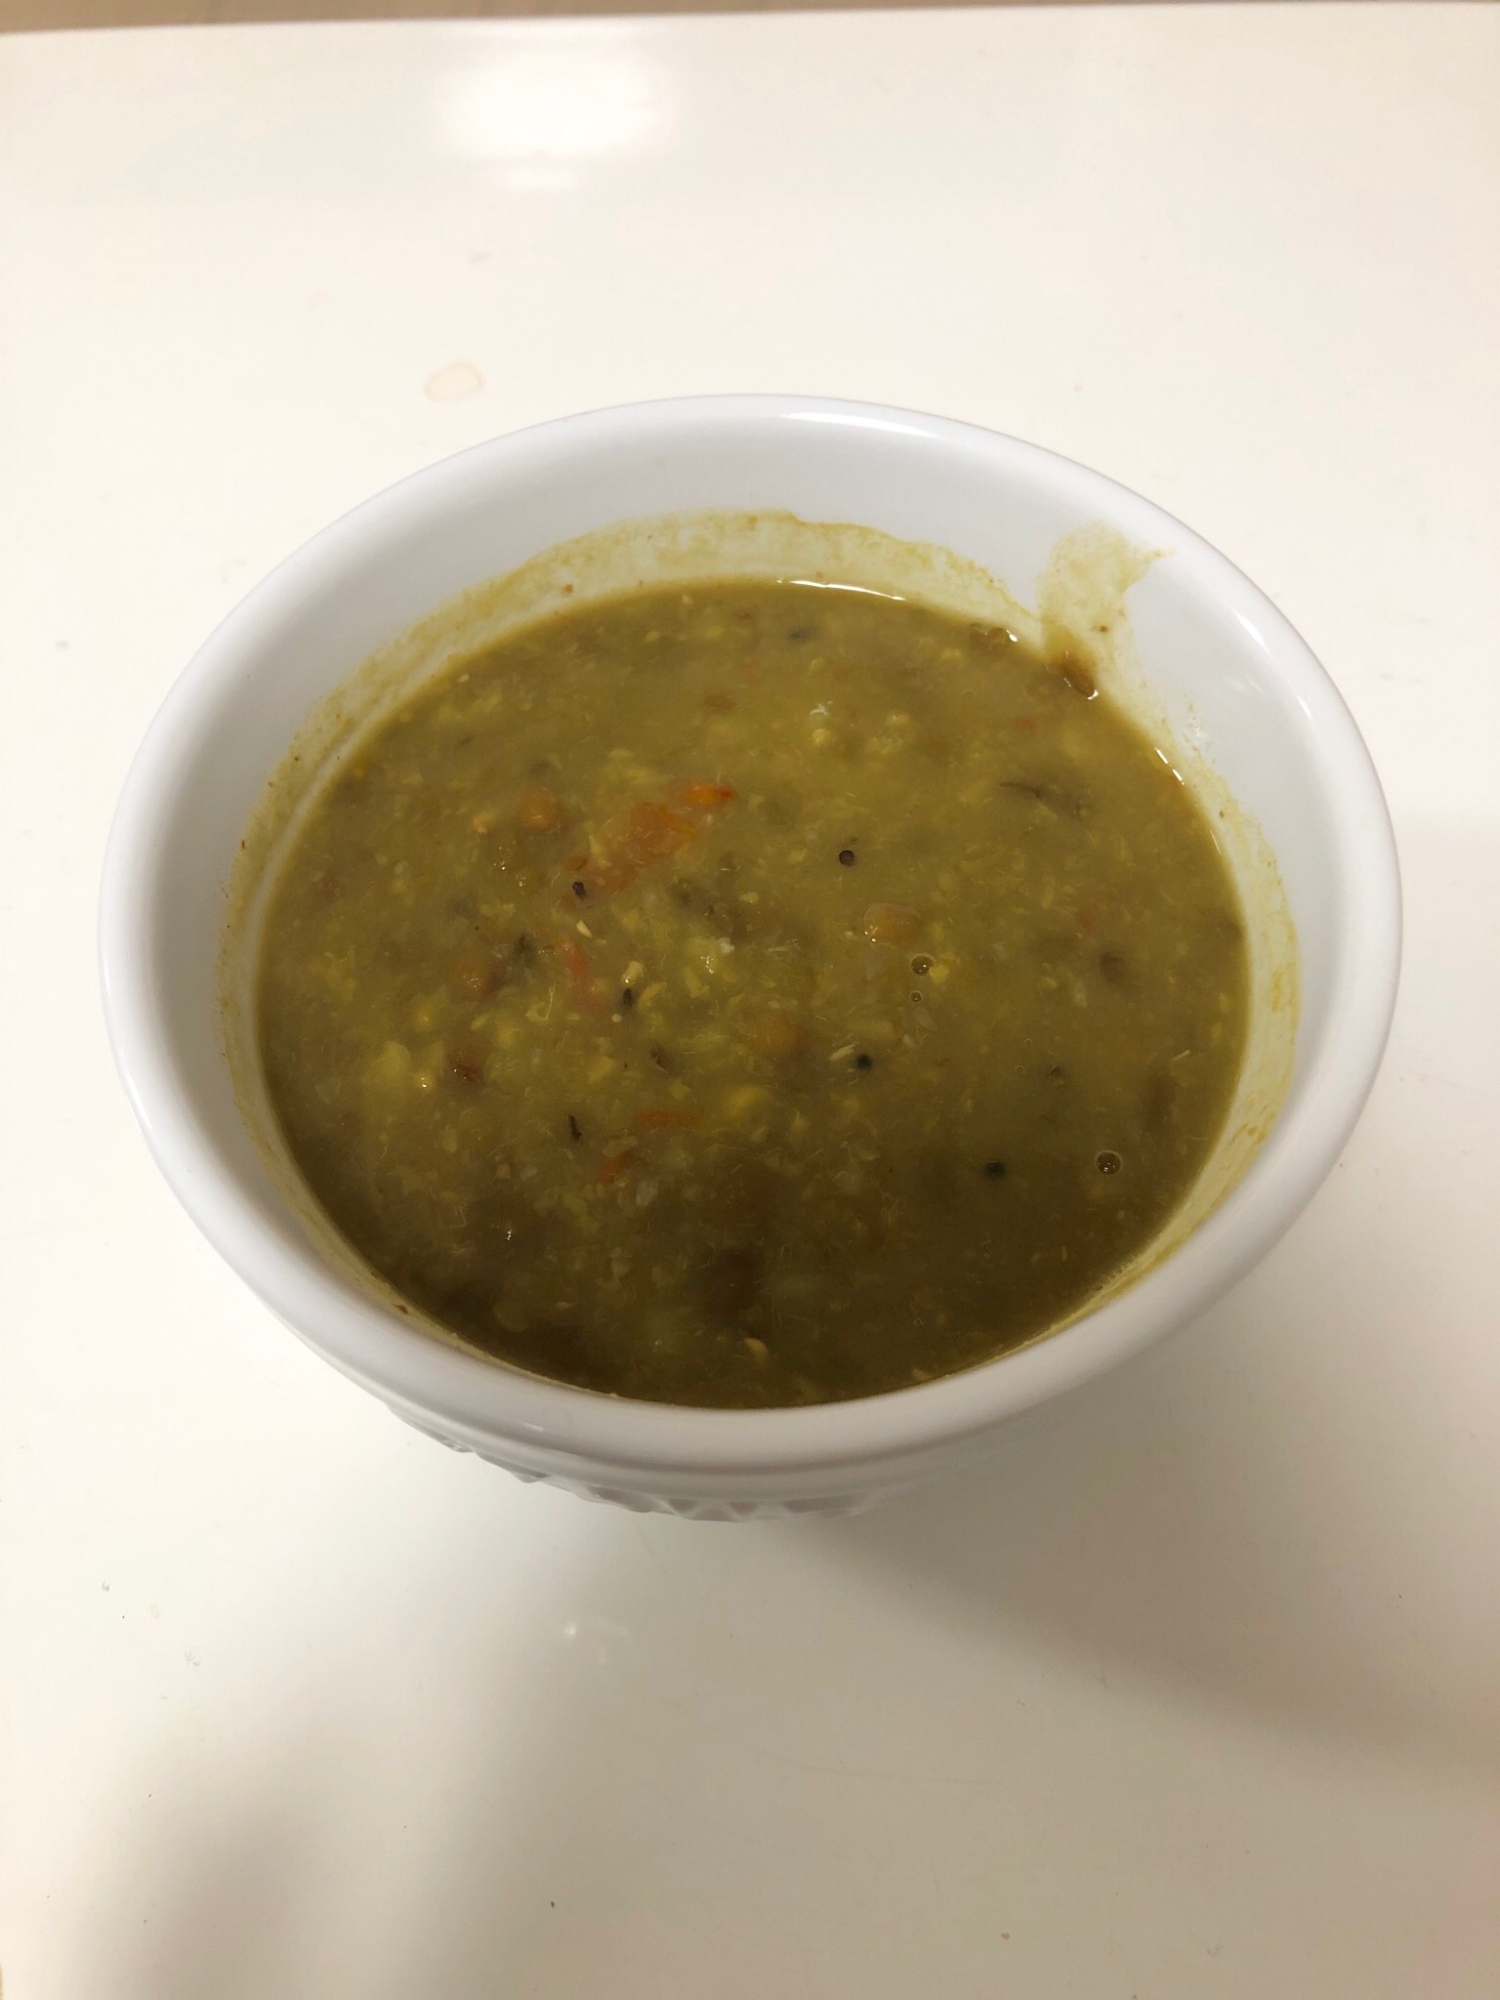 ムング豆とレンズ豆のダルスープ